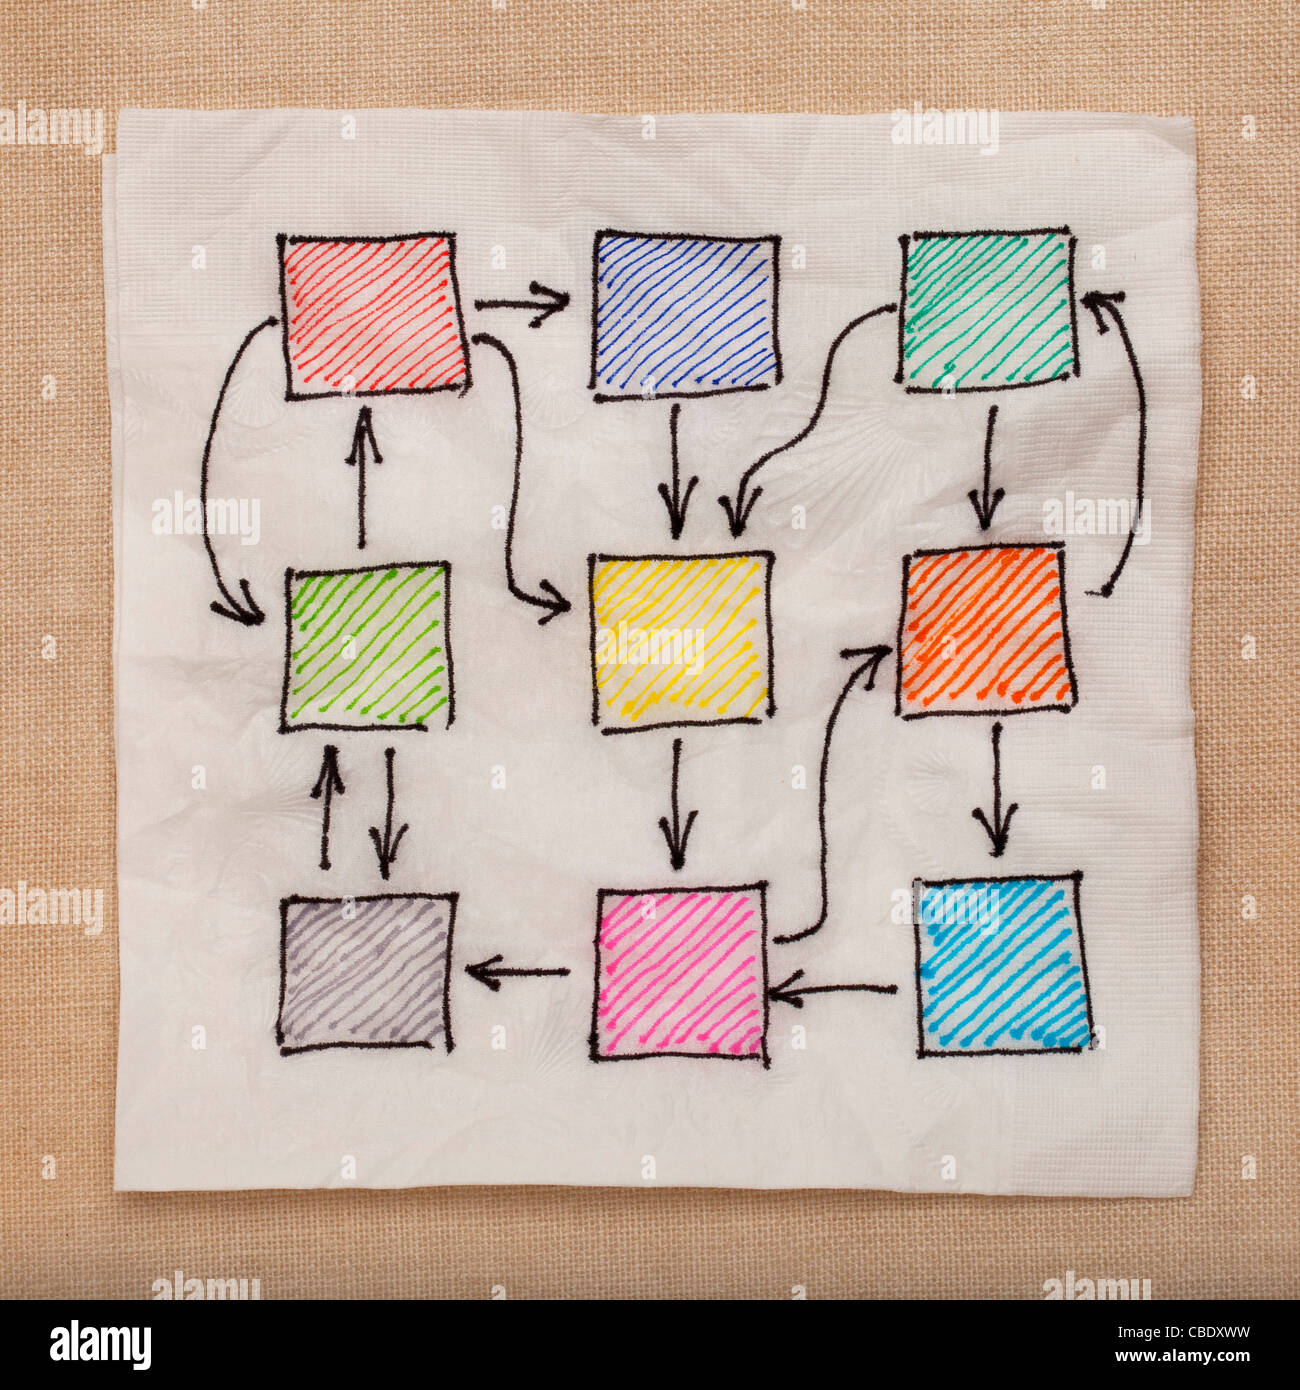 abstrakte Flussdiagramm oder Netzwerk mit komplizierten Verbindung - doodle Serviette gegen Tischdecke Stockfoto